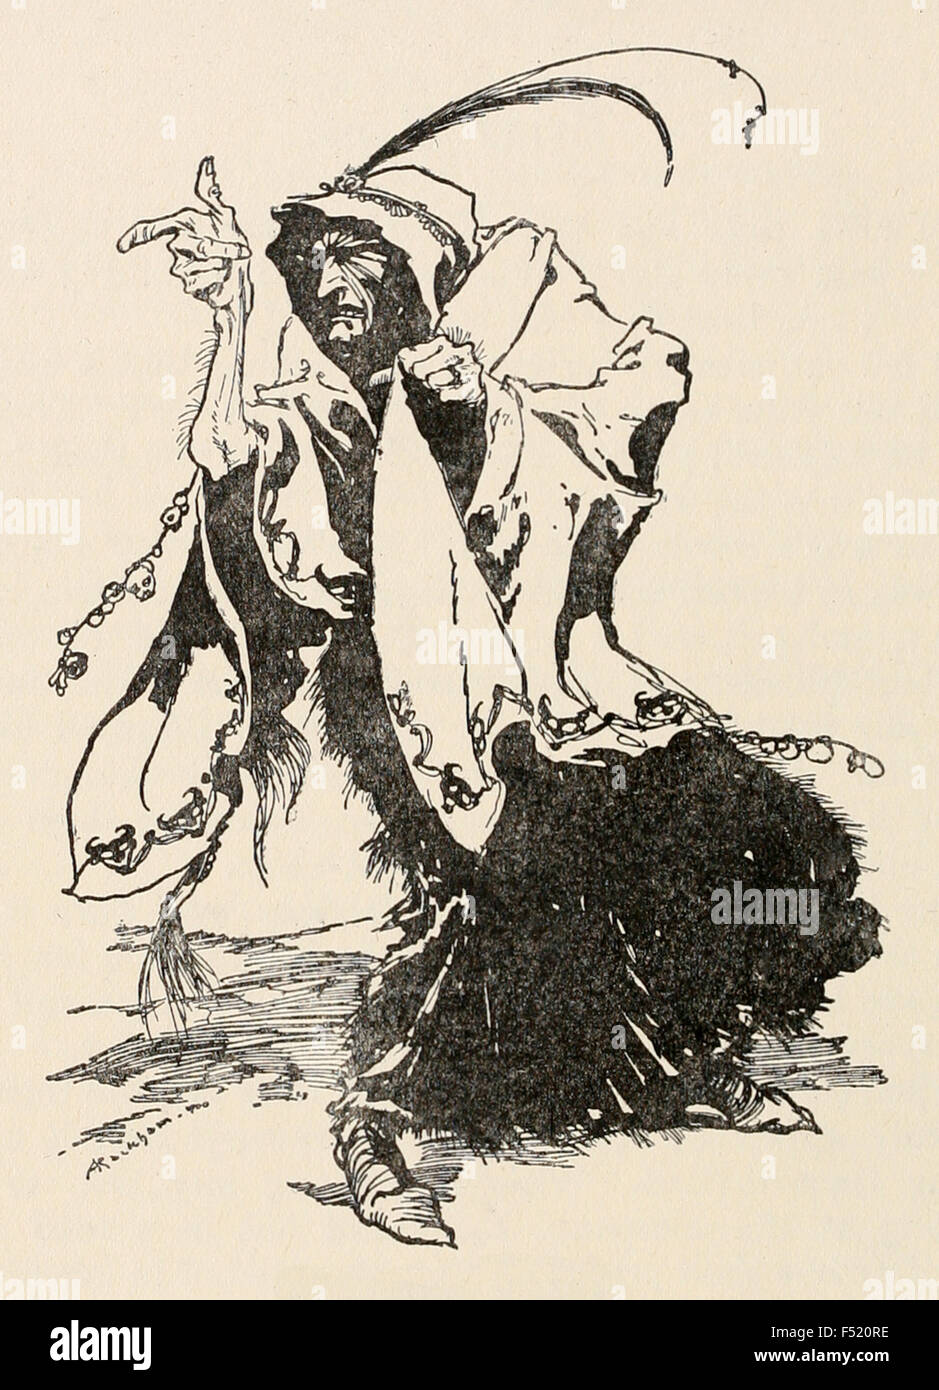 Le Treizième conte de fée marraine (méchants) de 'Briar Rose' (Sleeping Beauty) dans 'Les contes des frères Grimm's', illustration par Arthur Rackham (1867-1939). Voir la description pour plus d'informations. Banque D'Images